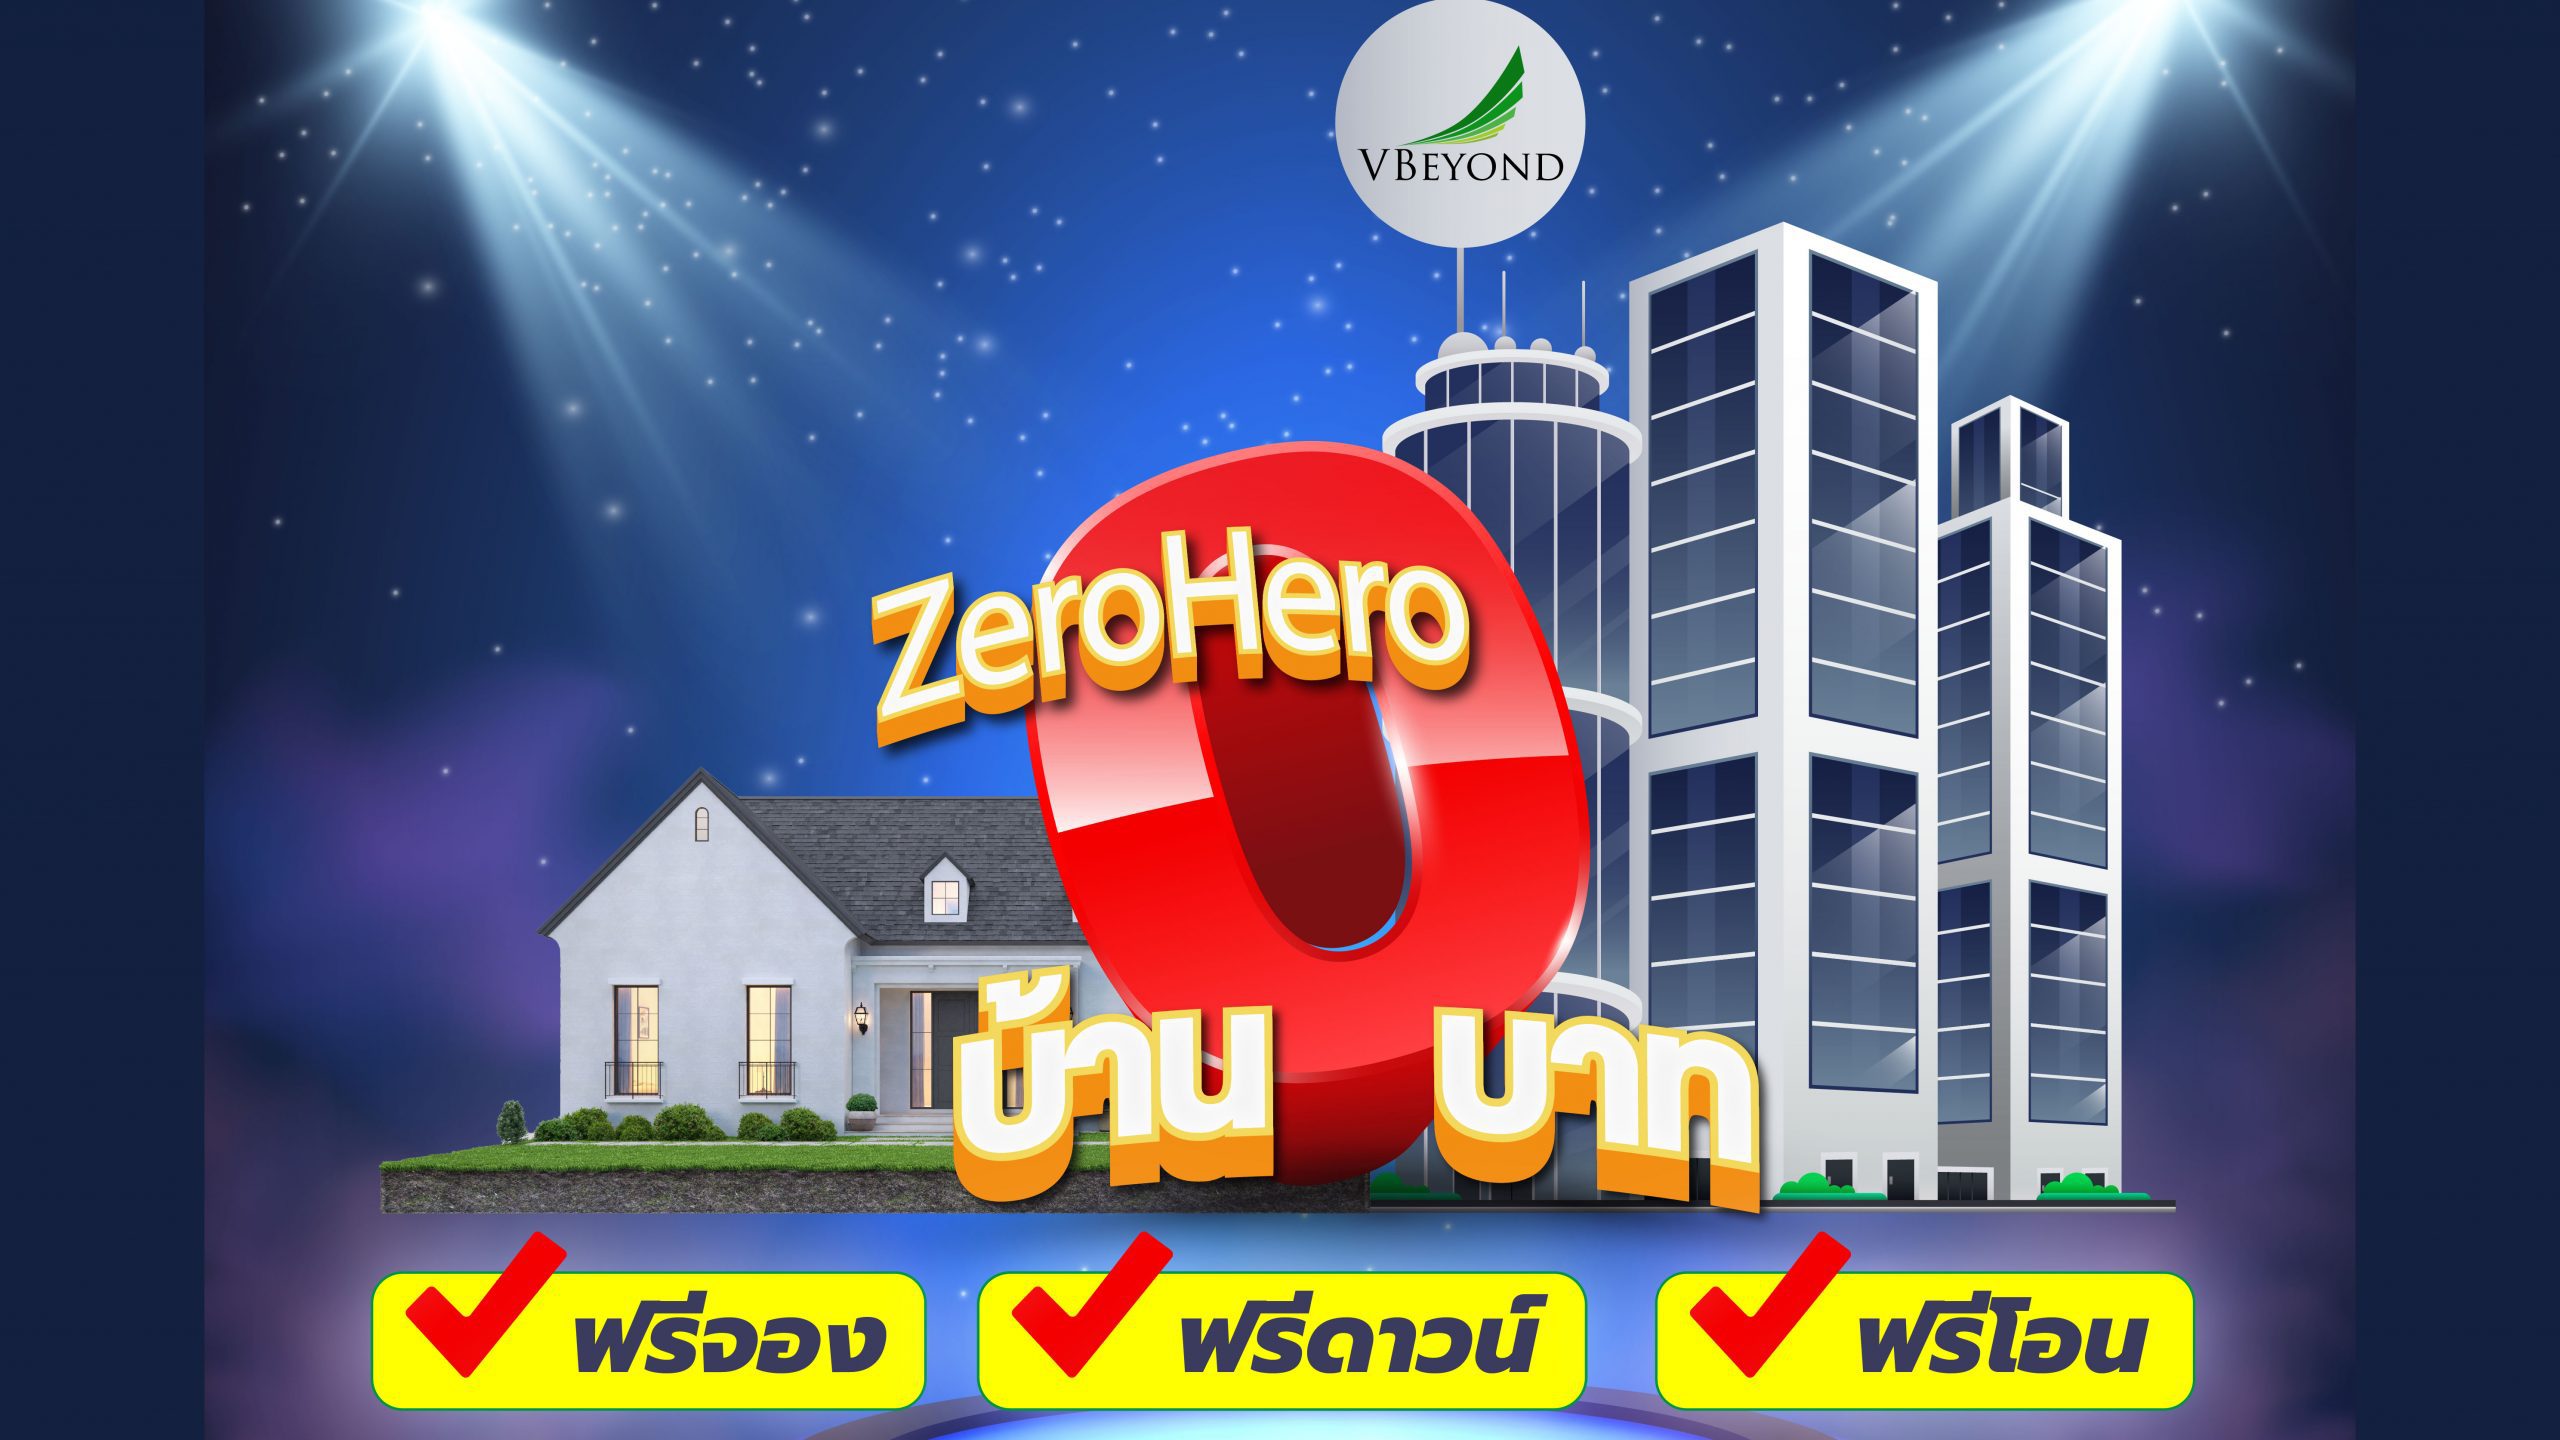 วีบียอนด์จัดใหญ่ต้อนรับต้นปี ปล่อยโปรเด็ด “Zero Hero” ซื้อบ้านและคอนโด 0 บาท!!!